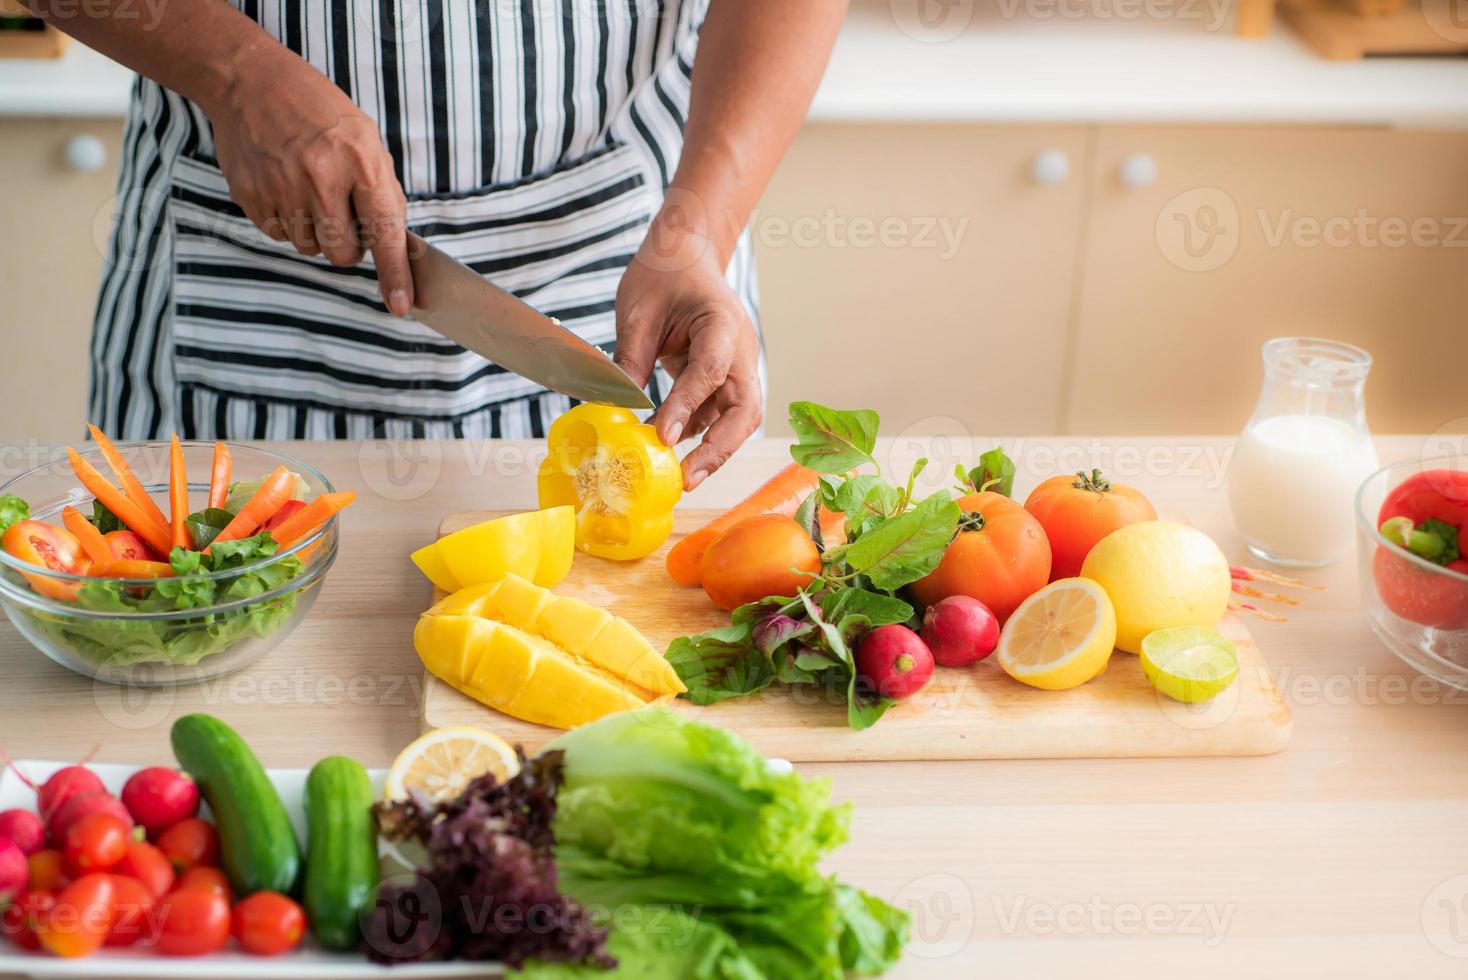 verdure e frutta come mango, limoni, peperoni, pomodori, carote vengono preparate sulla tavola e su un tagliere da tagliare, per le insalate in cucina. foto